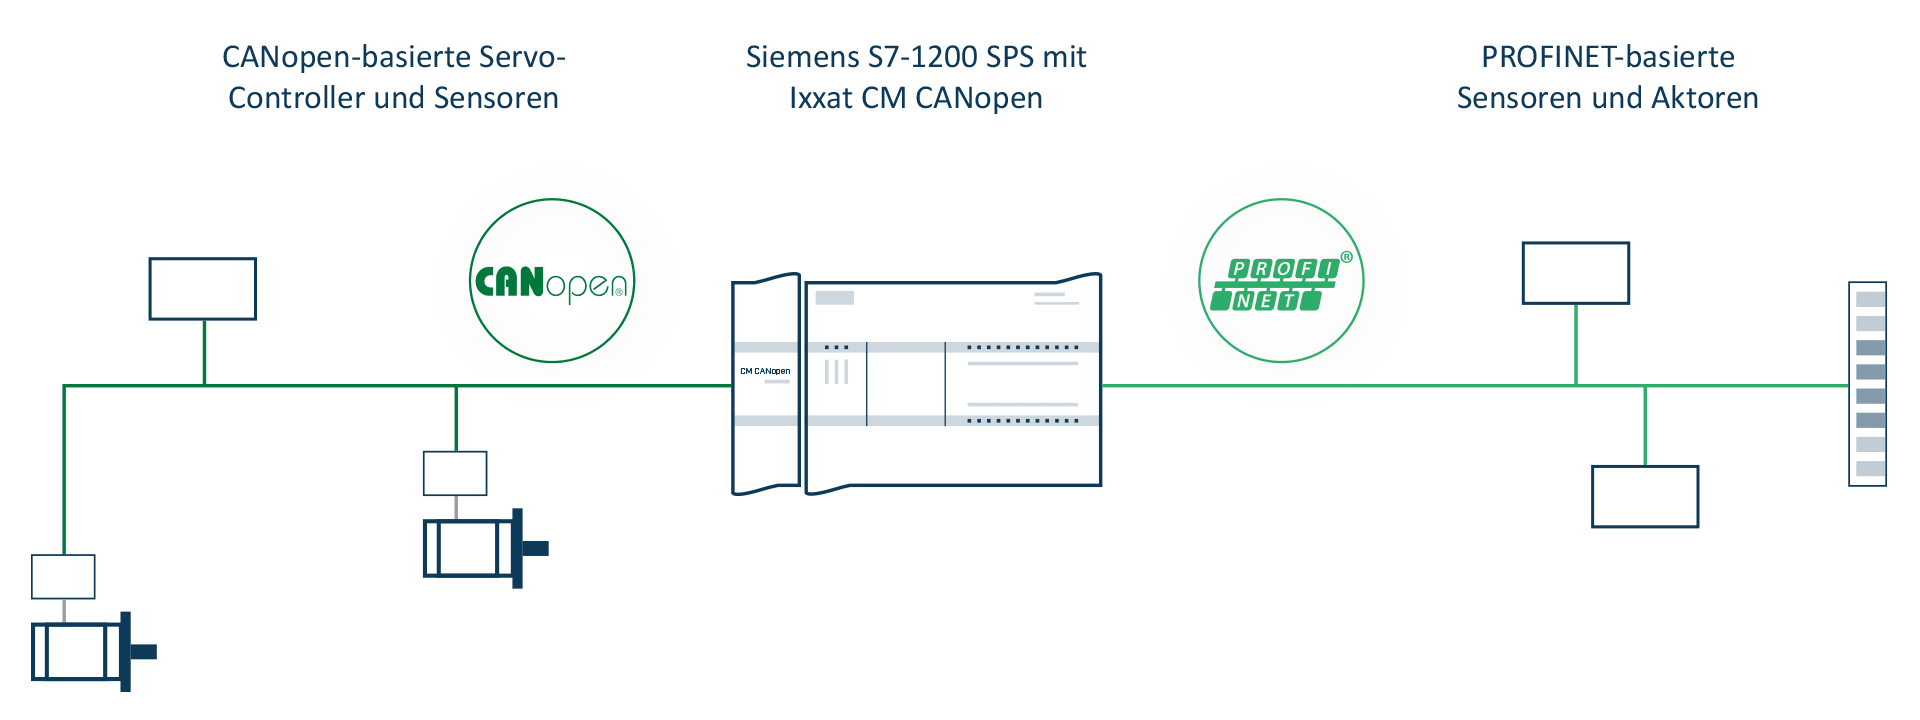 CANopen als Backbone-Netzwerk in Siemens SPS-Umgebung